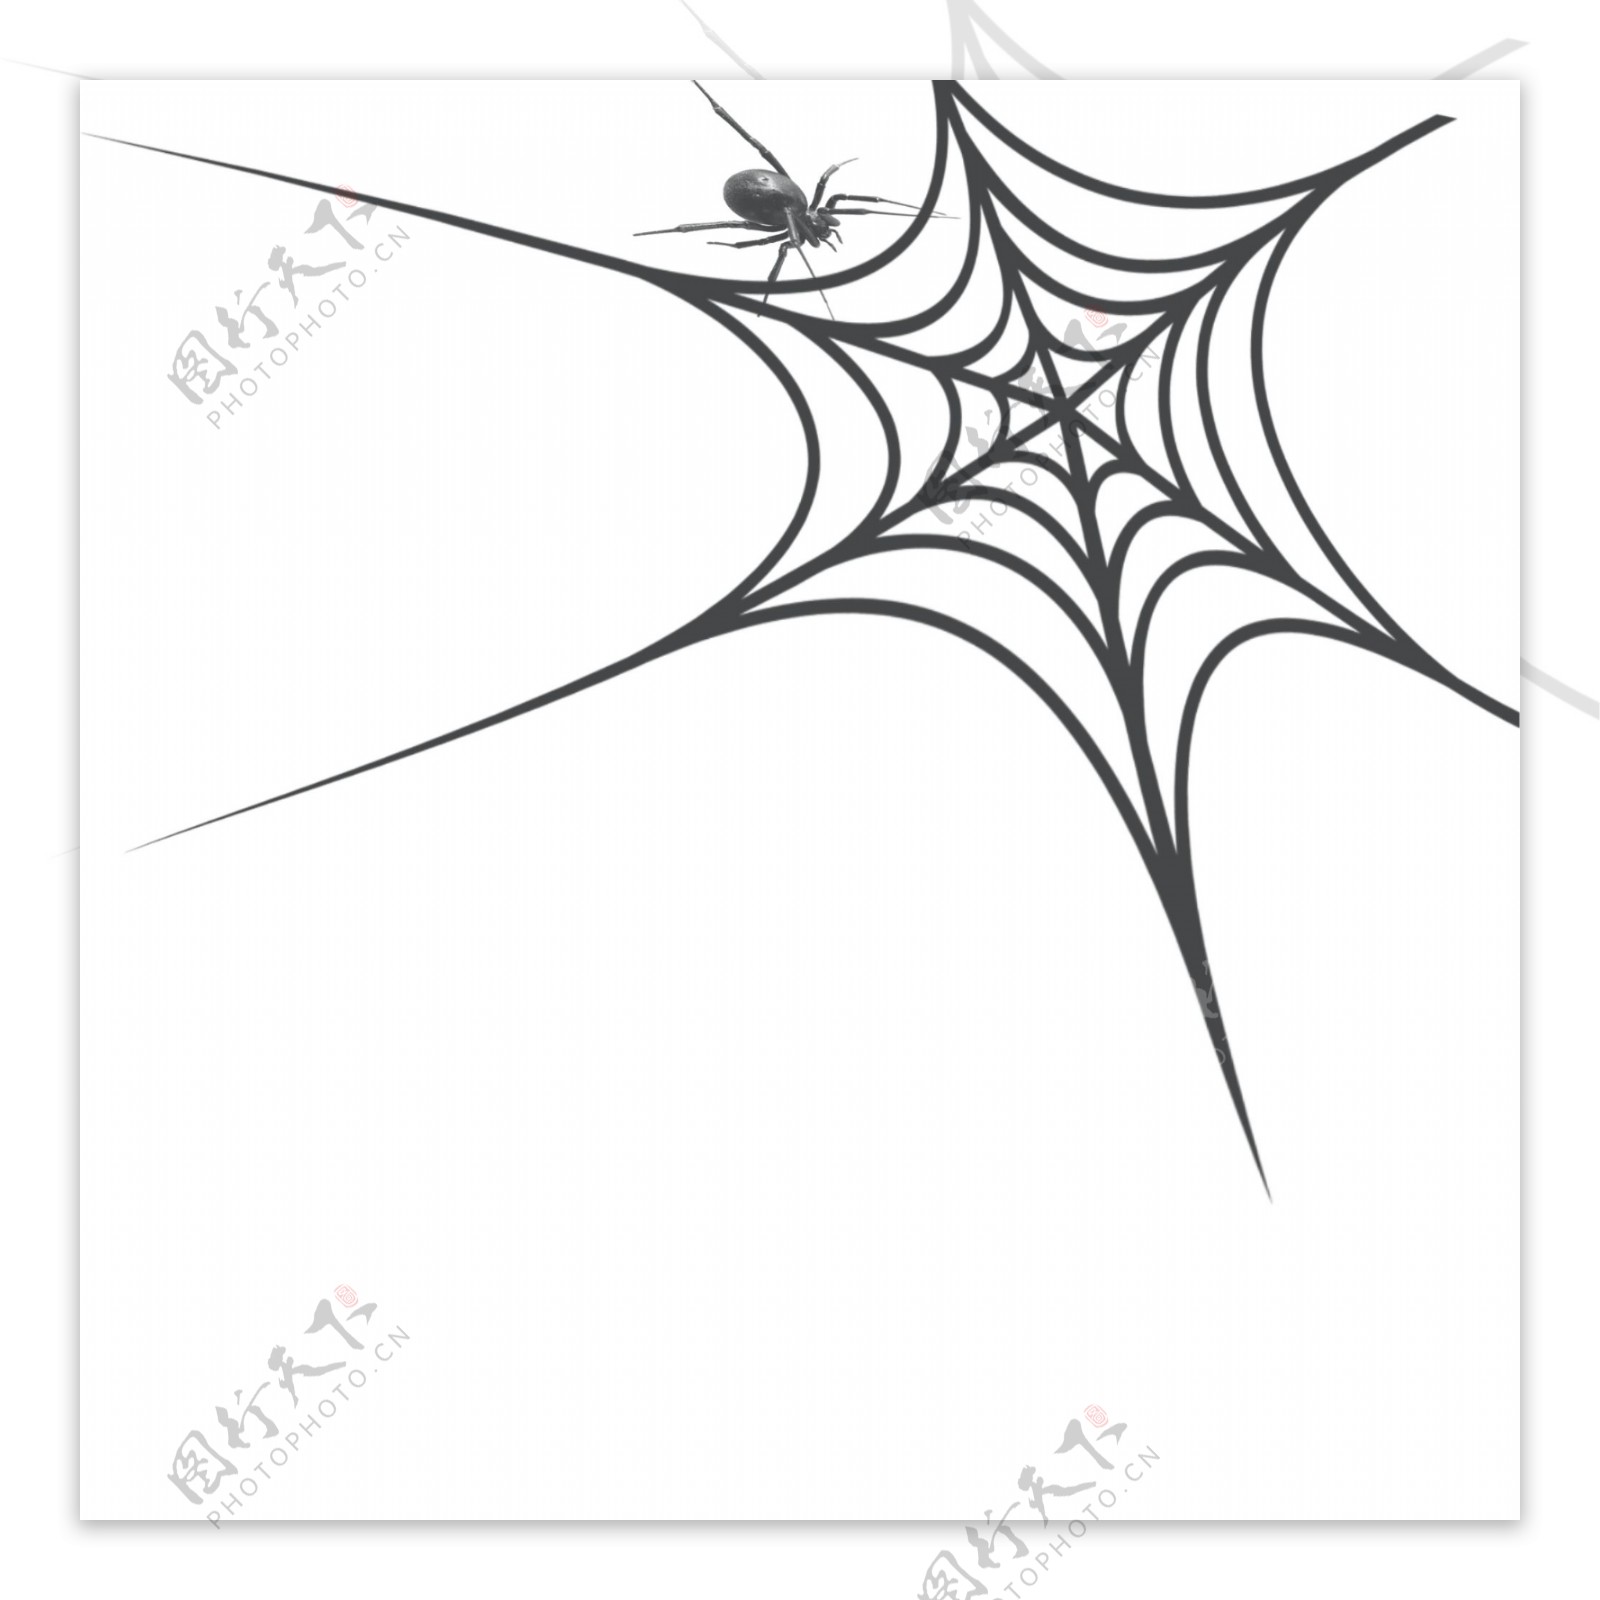 蜘蛛网黑色网状蜘蛛网元素